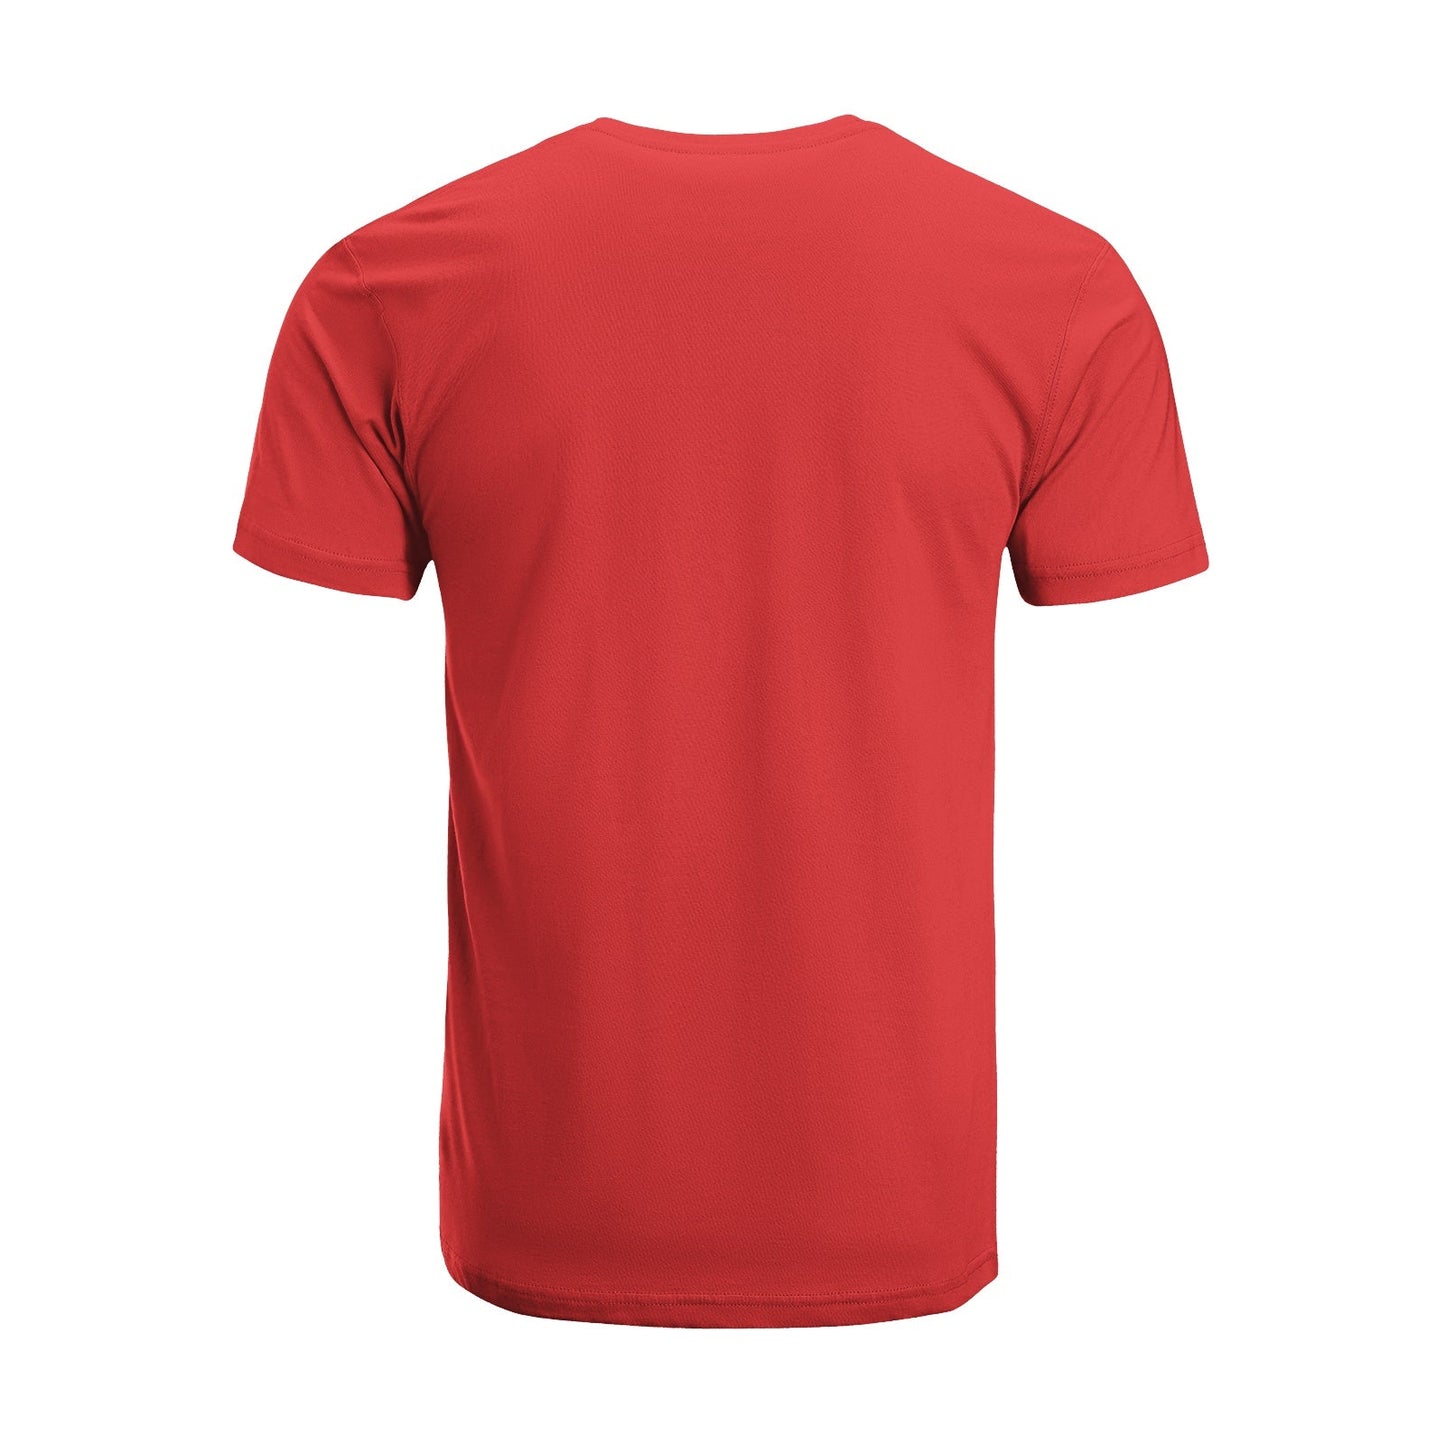 Unisex Short Sleeve Crew Neck Cotton Jersey T-Shirt TRUCK 35